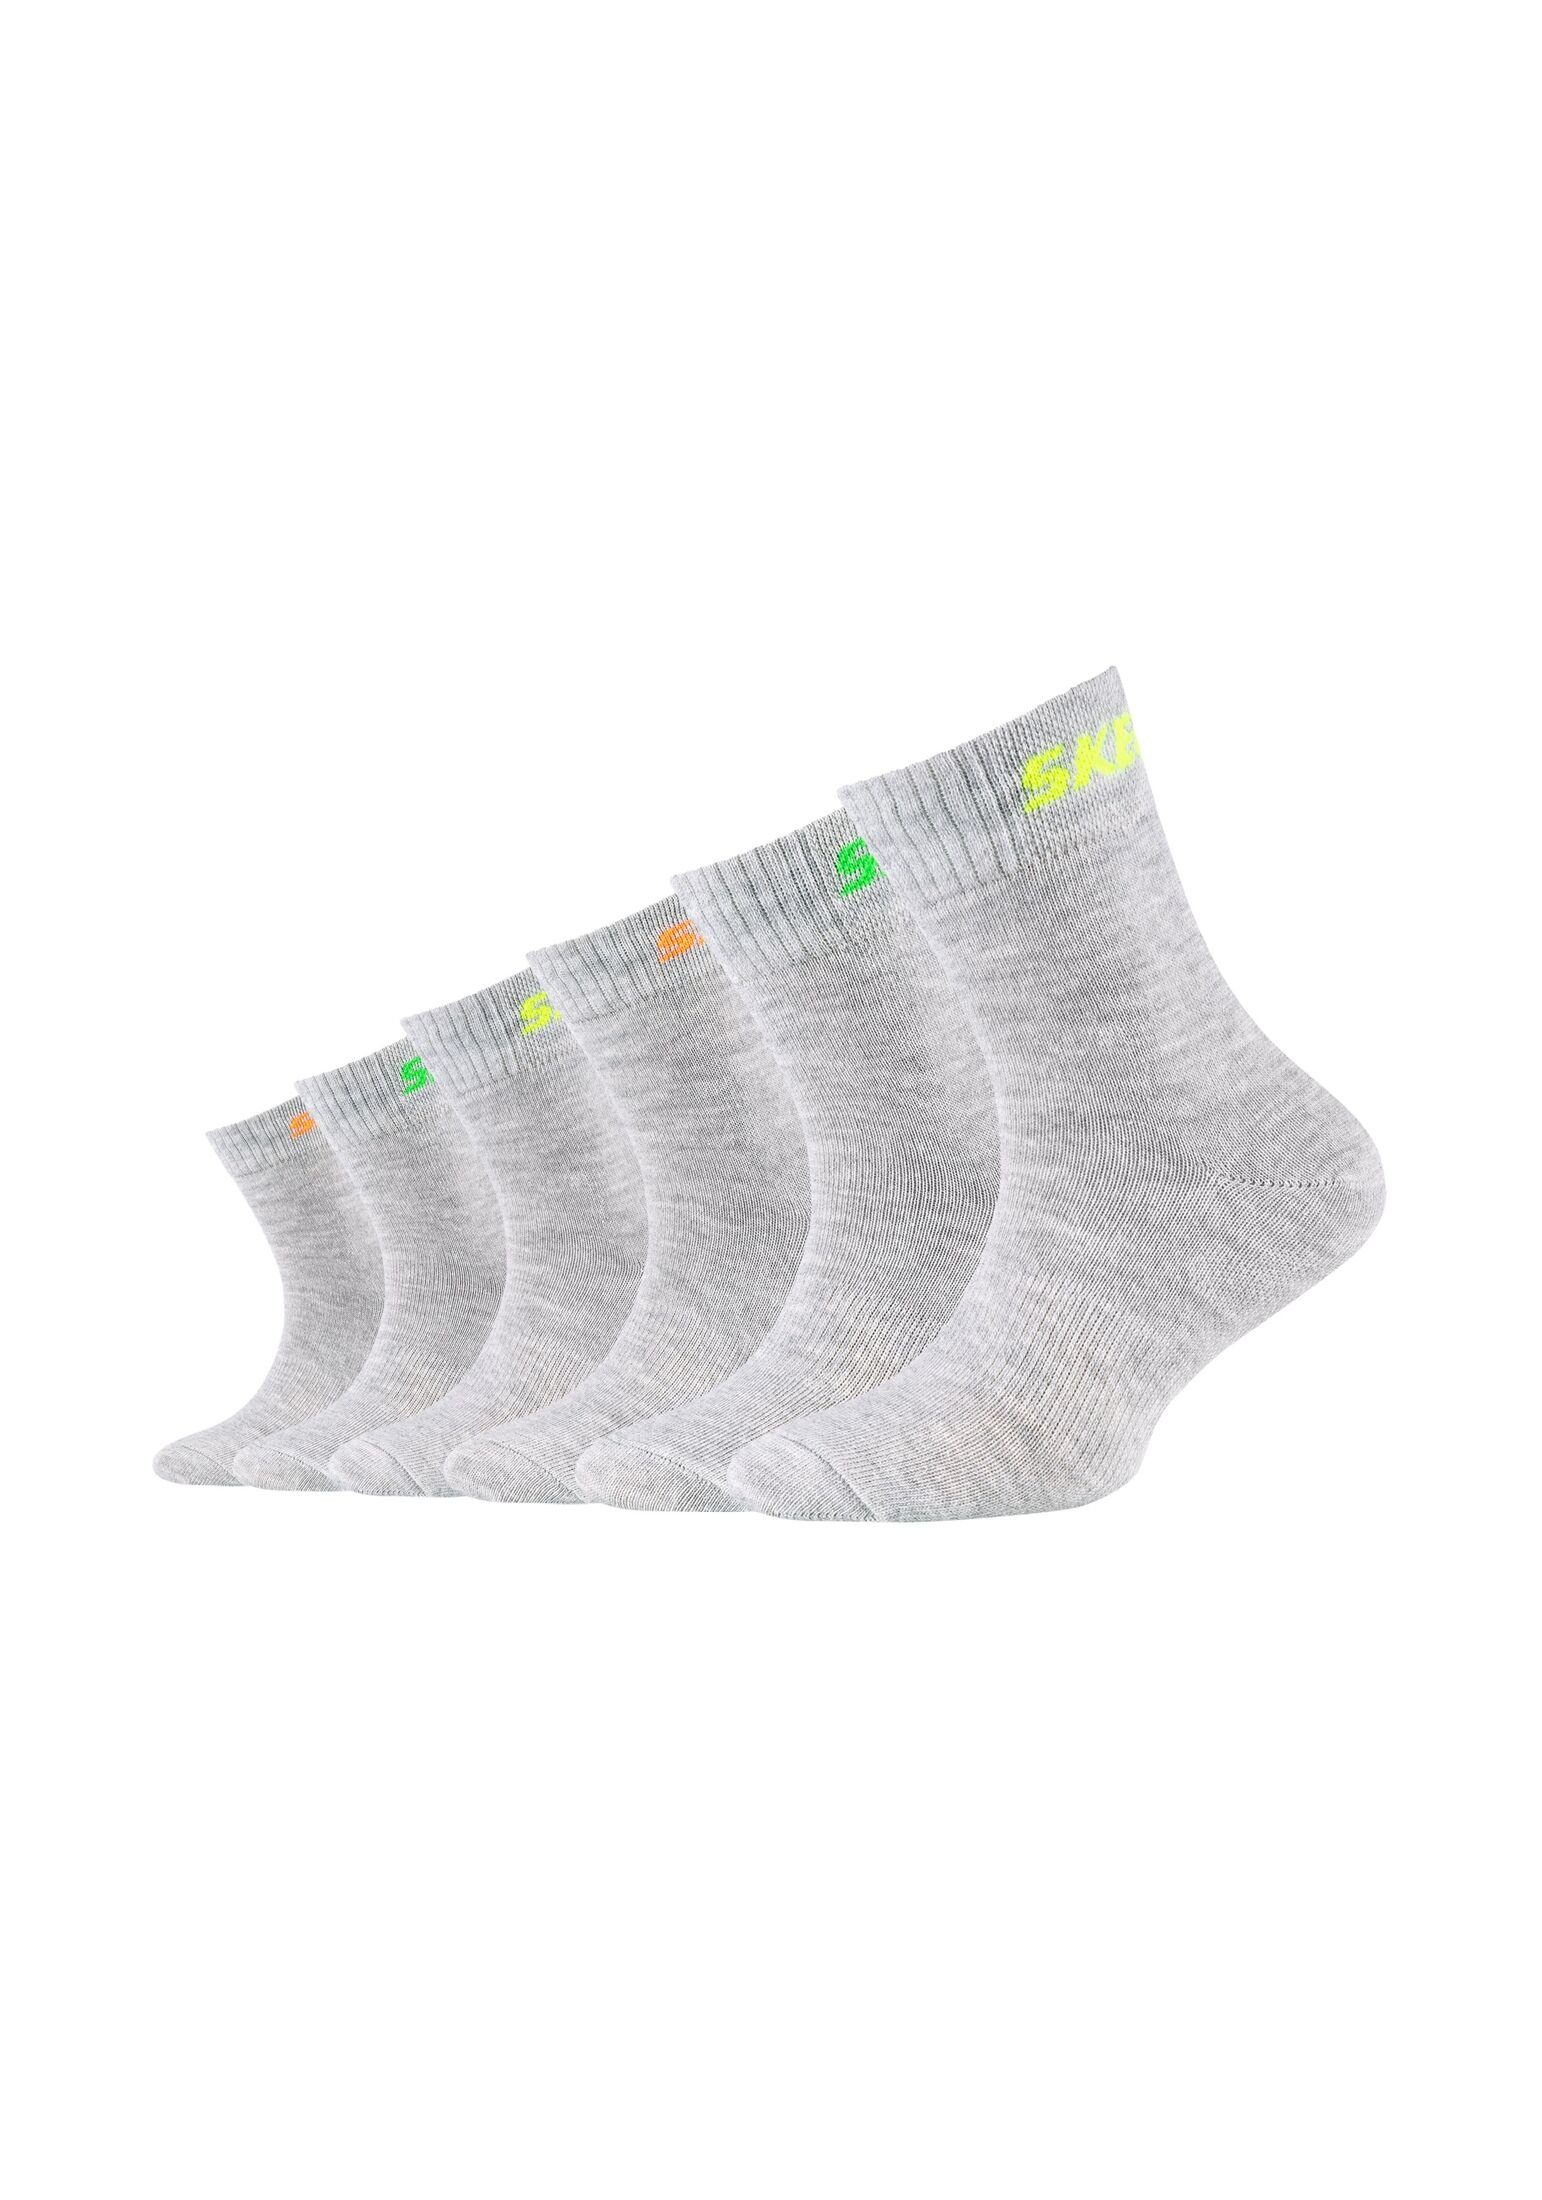 Skechers Socken Socken 6er Pack melange fog